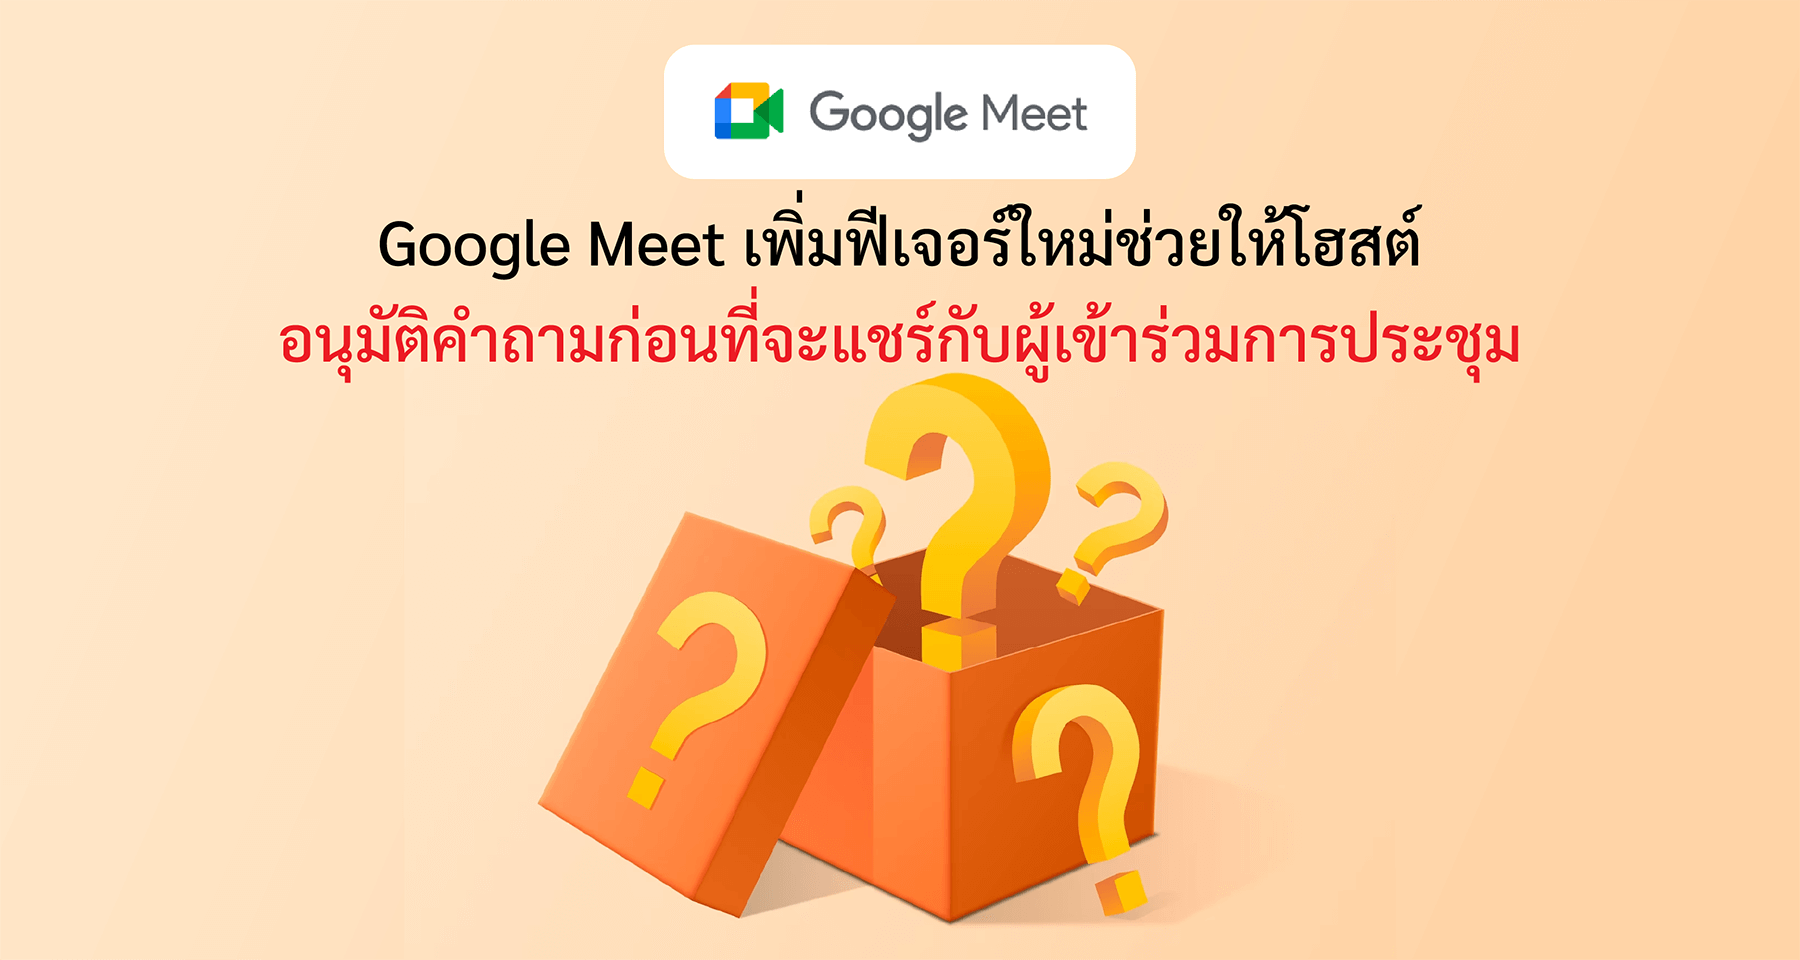 Google Meet เพิ่มฟีเจอร์ใหม่ช่วยให้โฮสต์อนุมัติคำถามก่อนที่จะแชร์กับผู้เข้าร่วมการประชุม